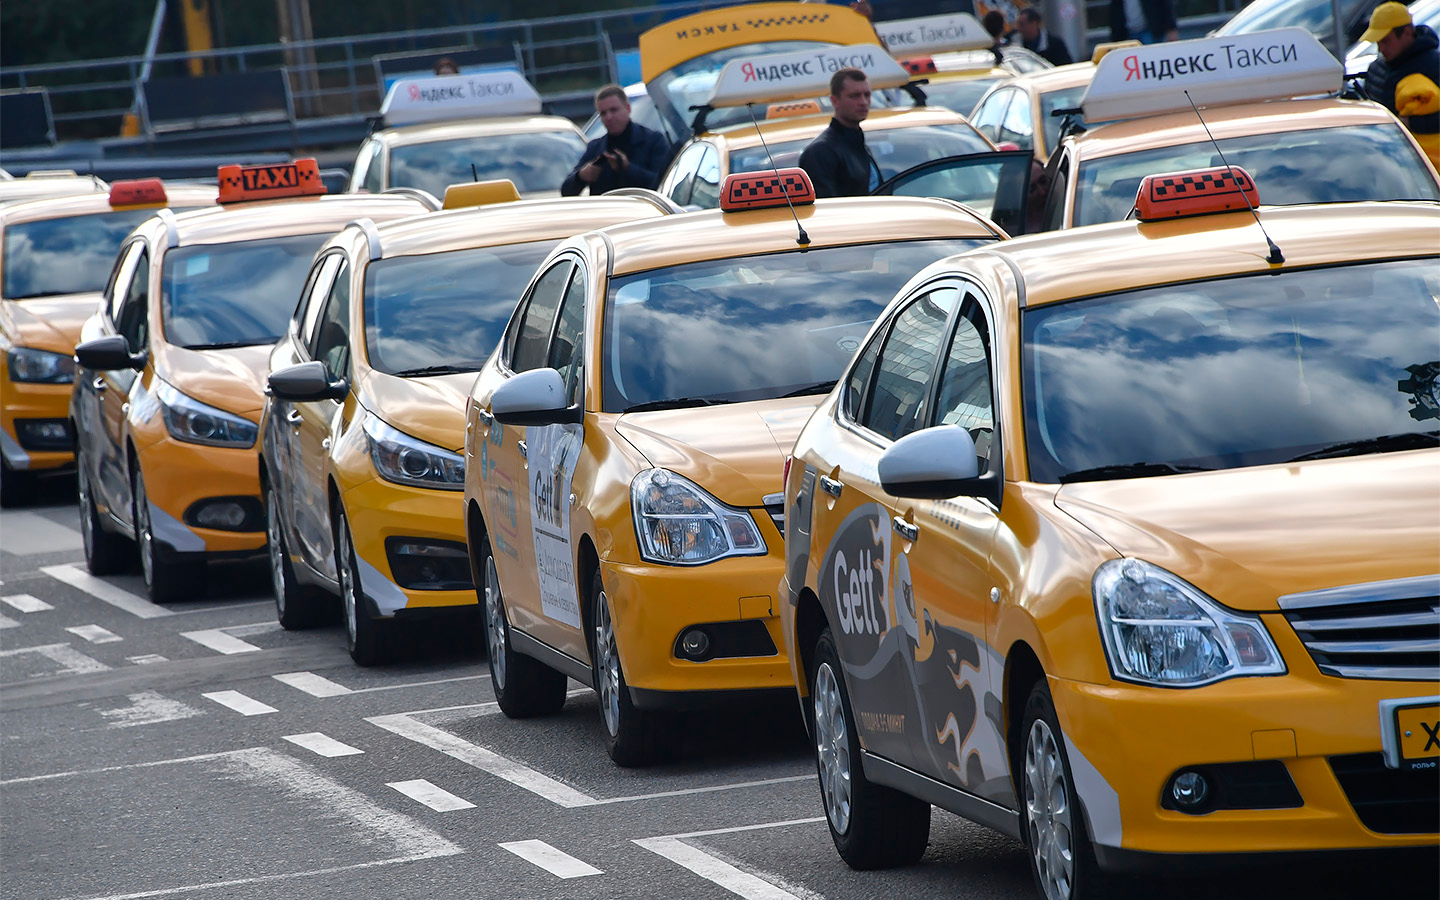 Информацию о конфискации авто за нелегальные услуги такси опровергли в Казахстане